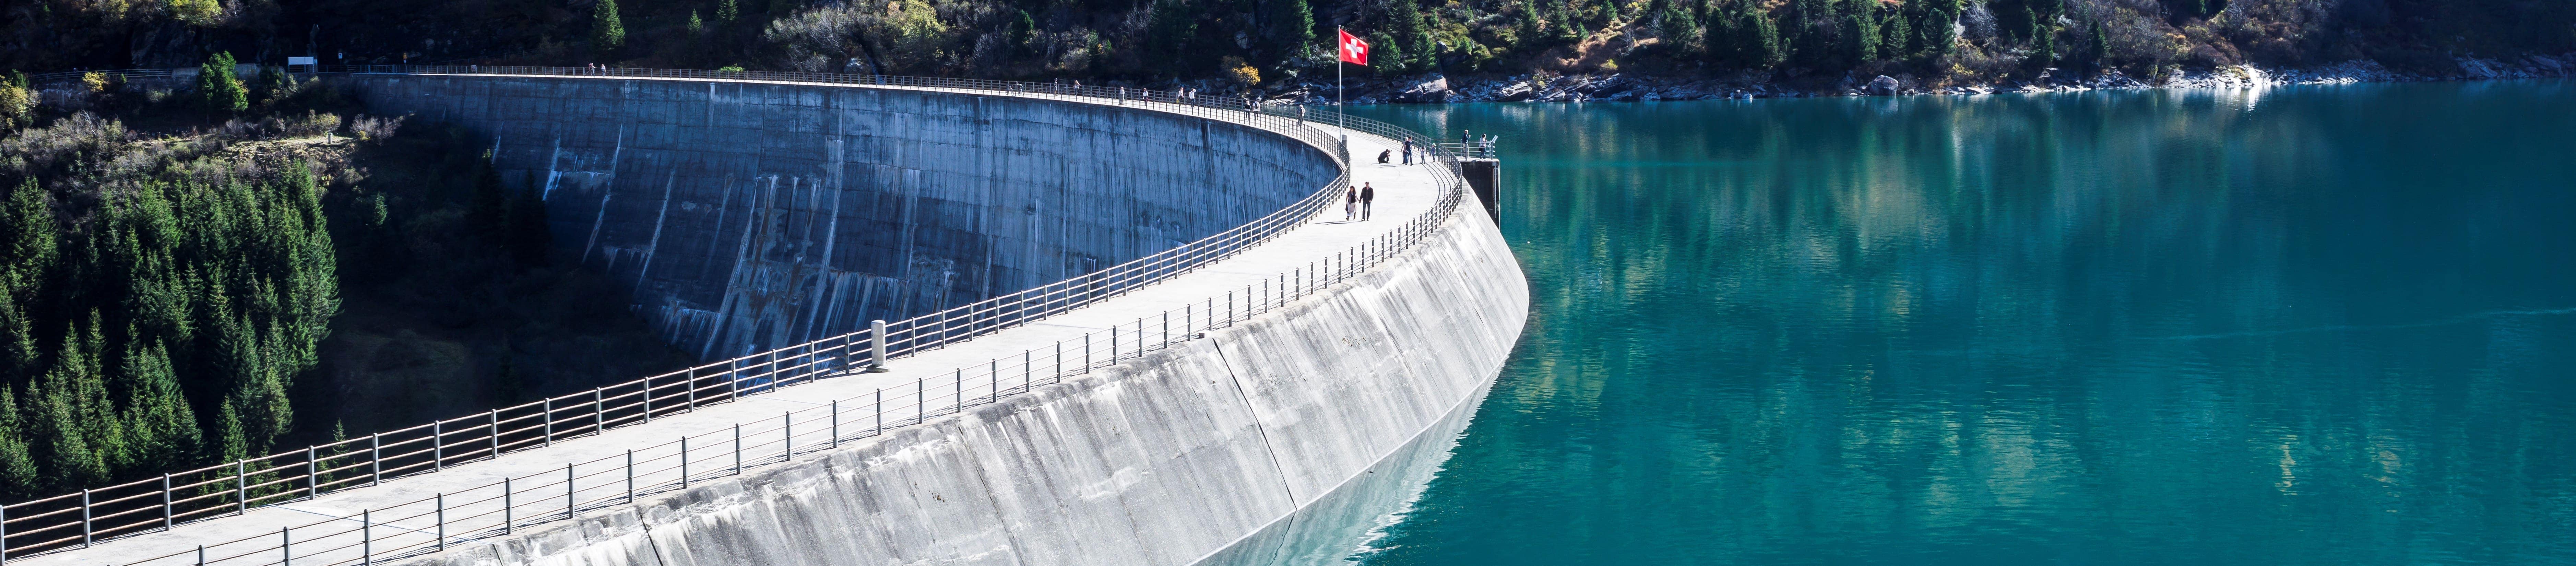 Staudamm mit Schweizerflagge und Menschen drauf